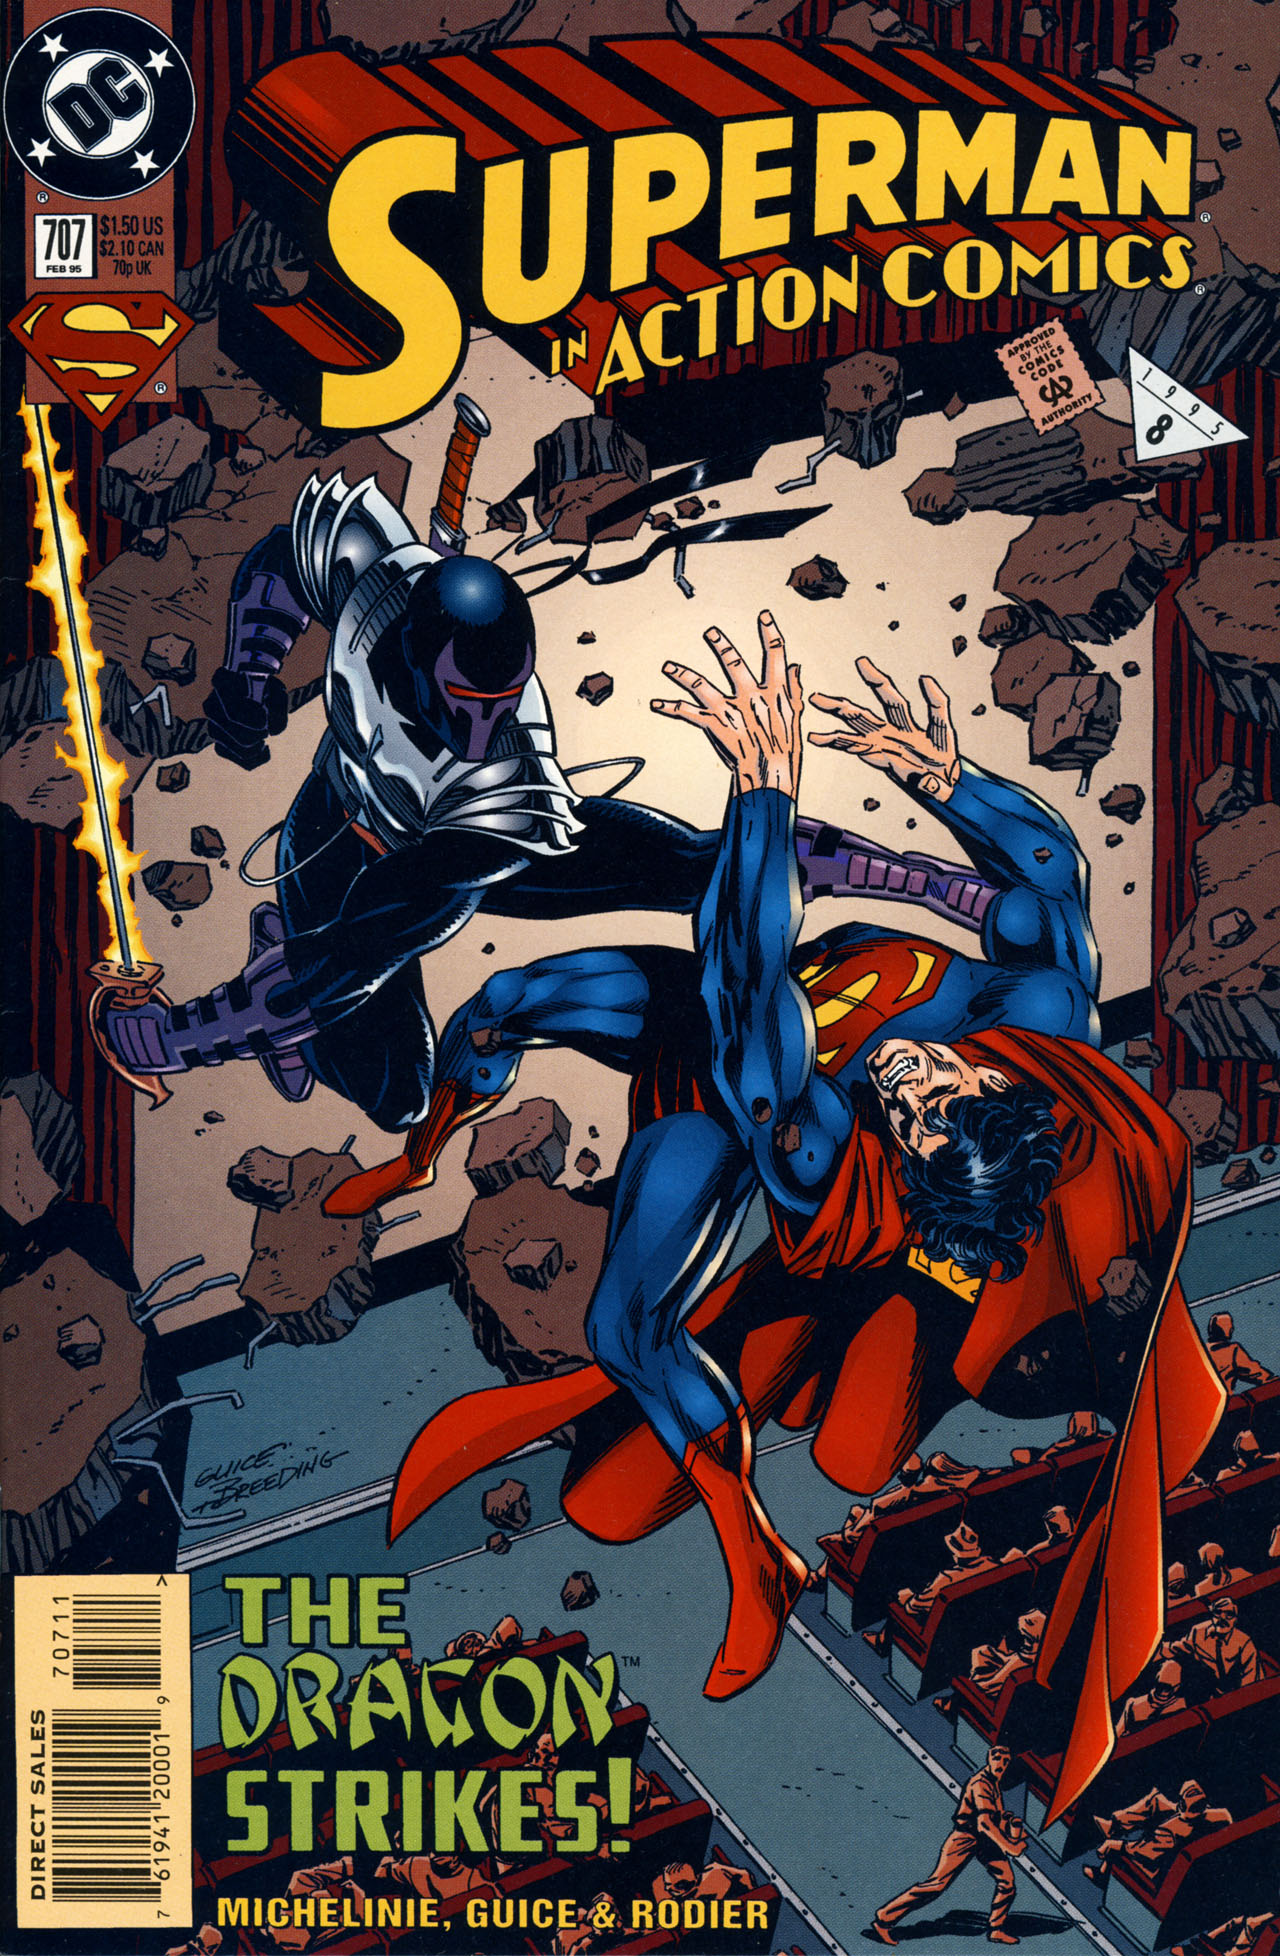 Action Comics Vol. 1 #707